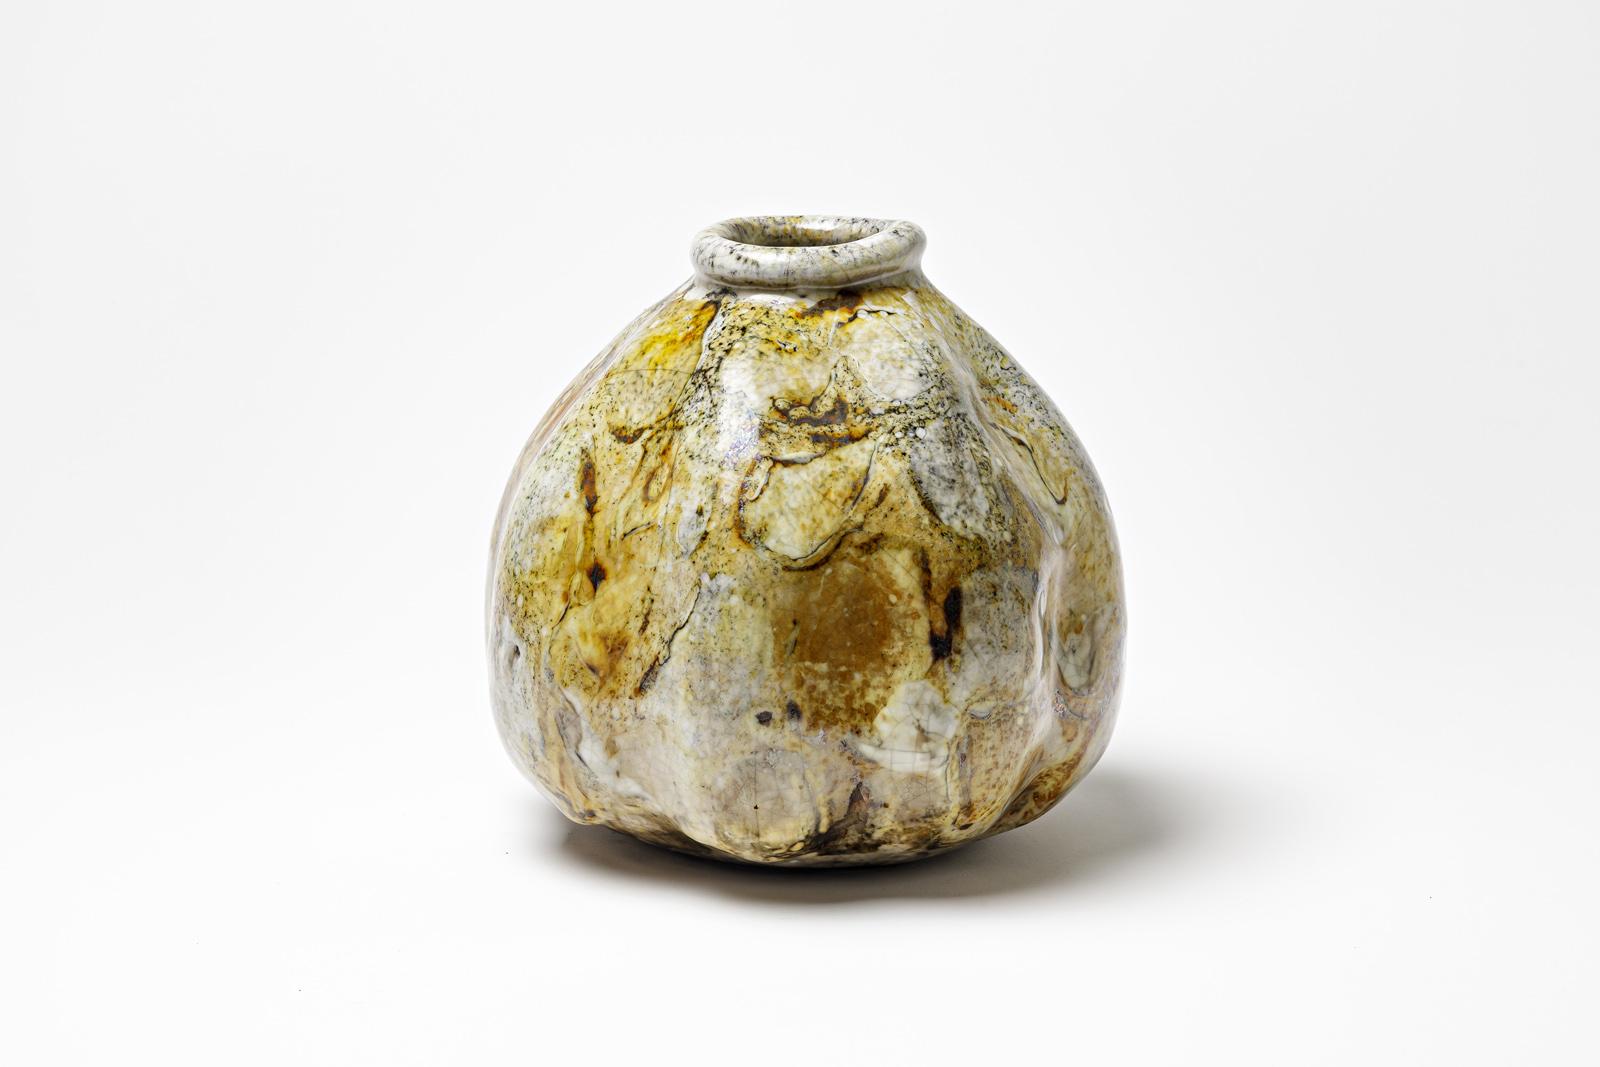 Gelb/braun und weiß glasierte Keramikvase von Gisèle Buthod Garçon. 
Raku gebrannt. Künstlermonogramm unter dem Sockel. CIRCA 1980-1990.
H : 8,3' x 7,1' Zoll.